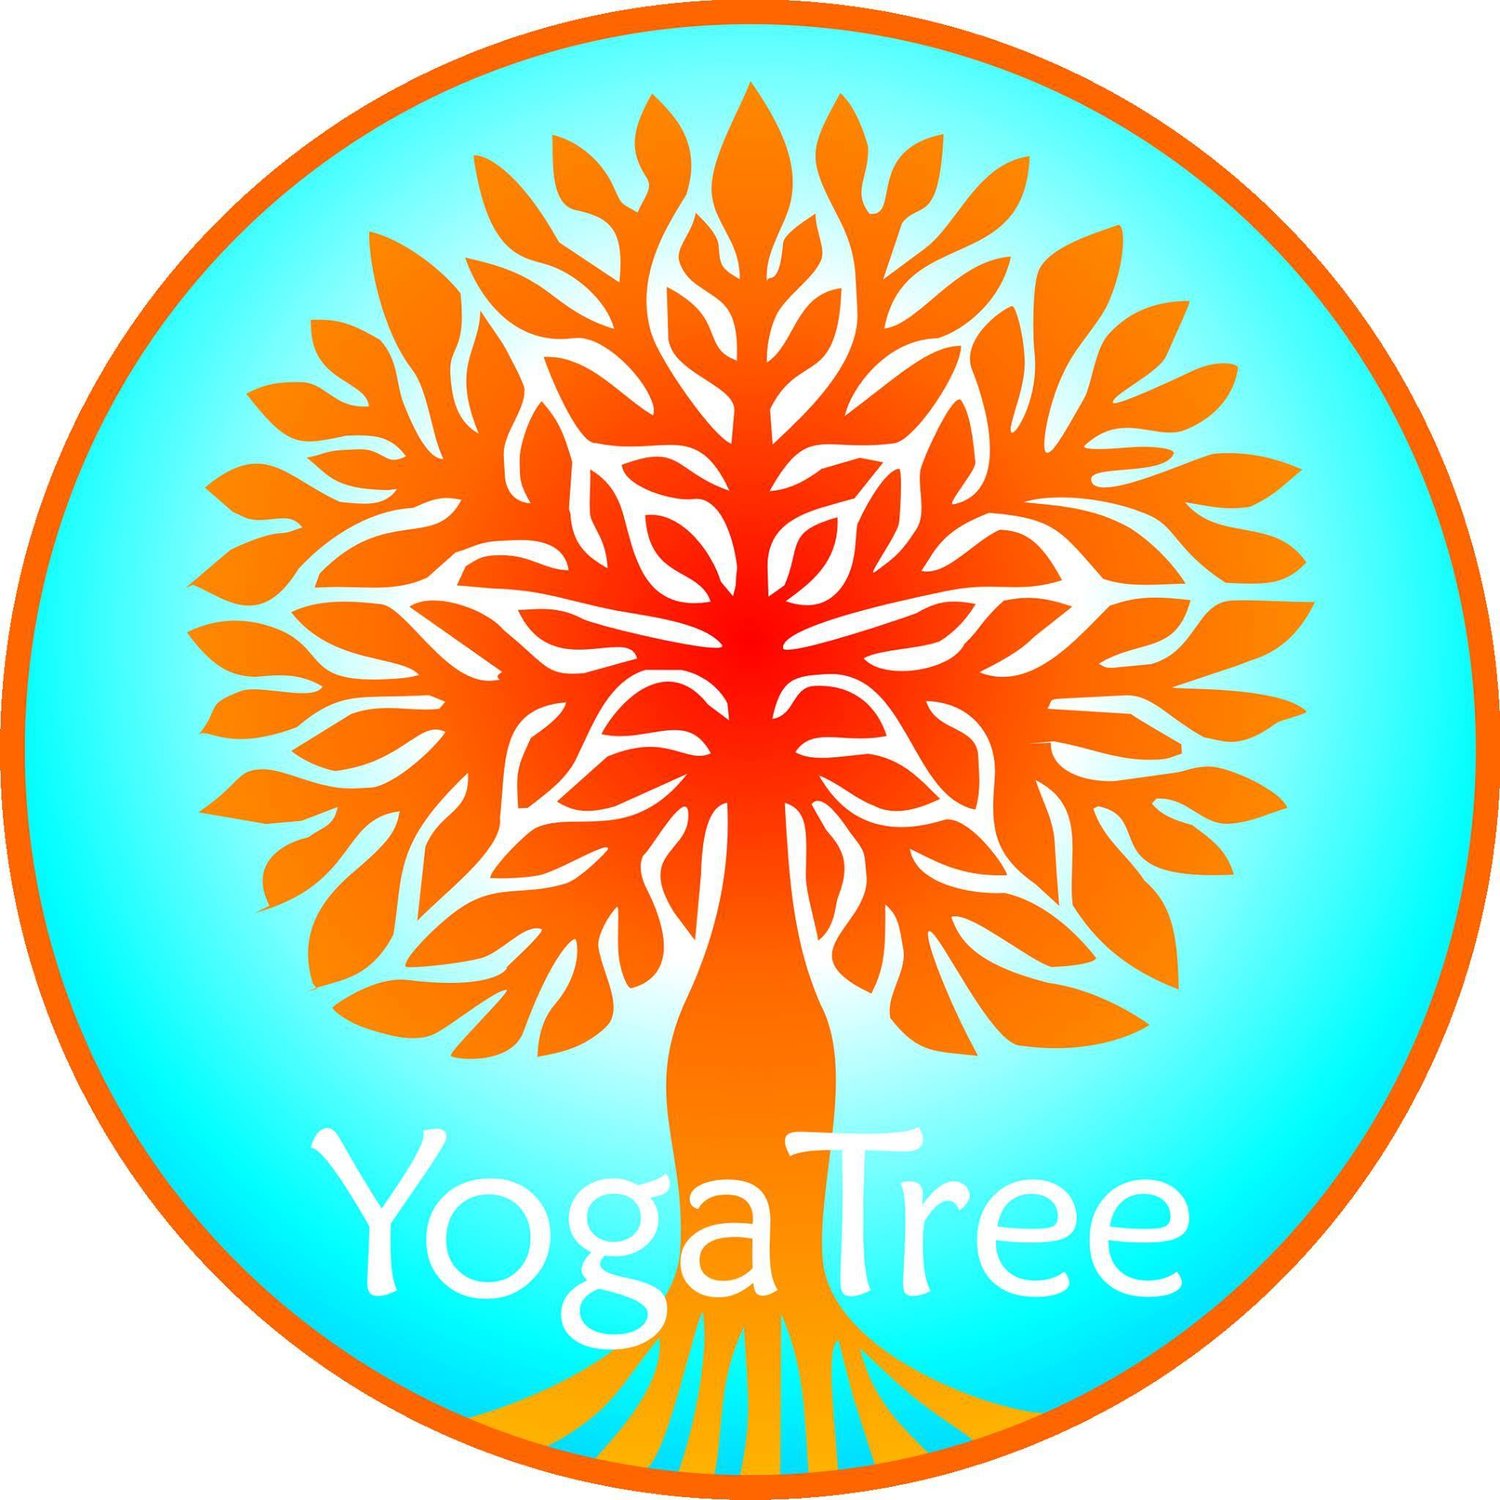 Yoga Tree Stanthorpe